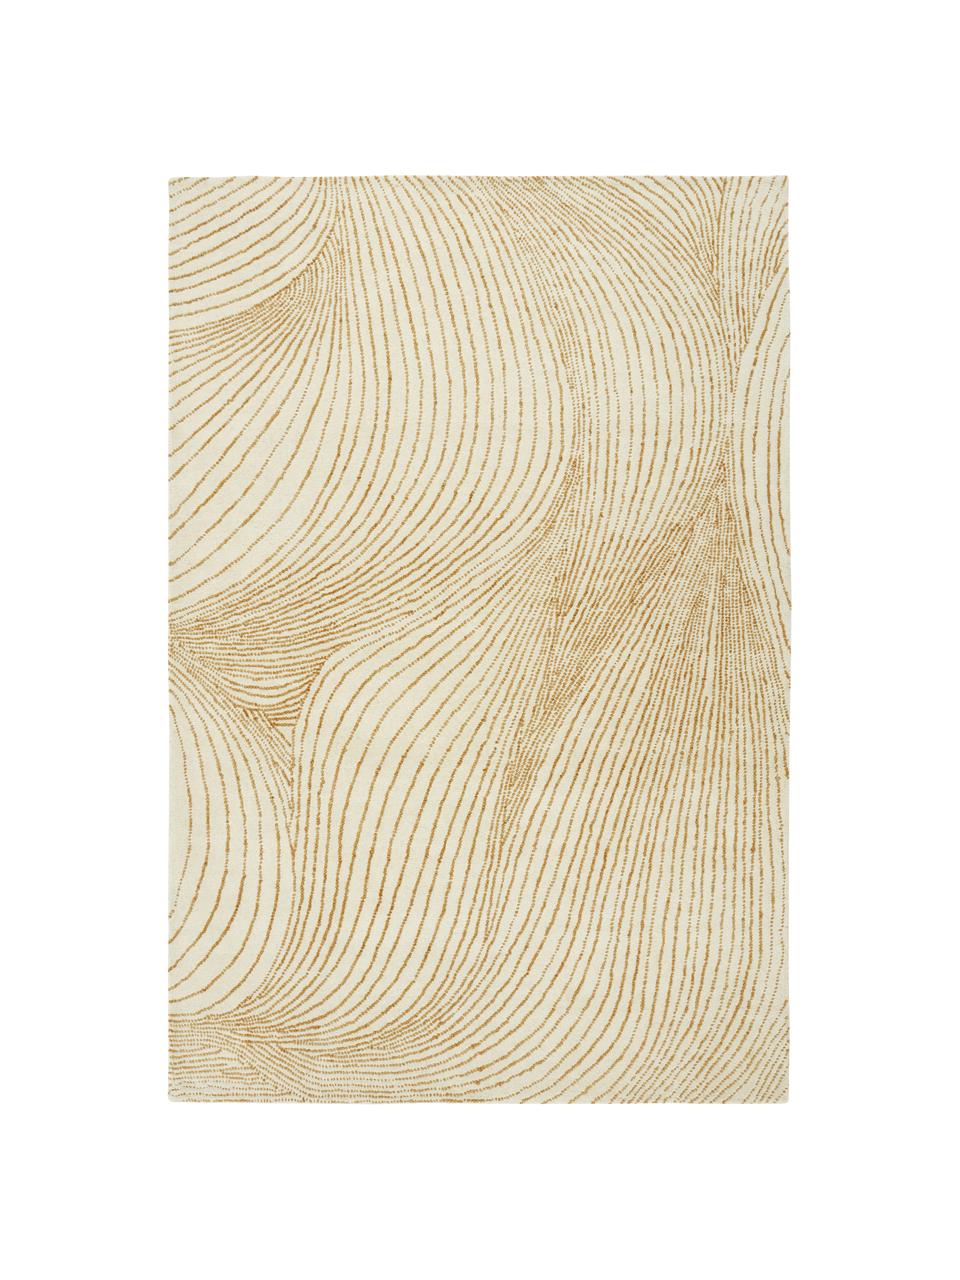 Velký ručně tkaný vlněný koberec s vlnitým vzorem Waverly, Béžová, bílá